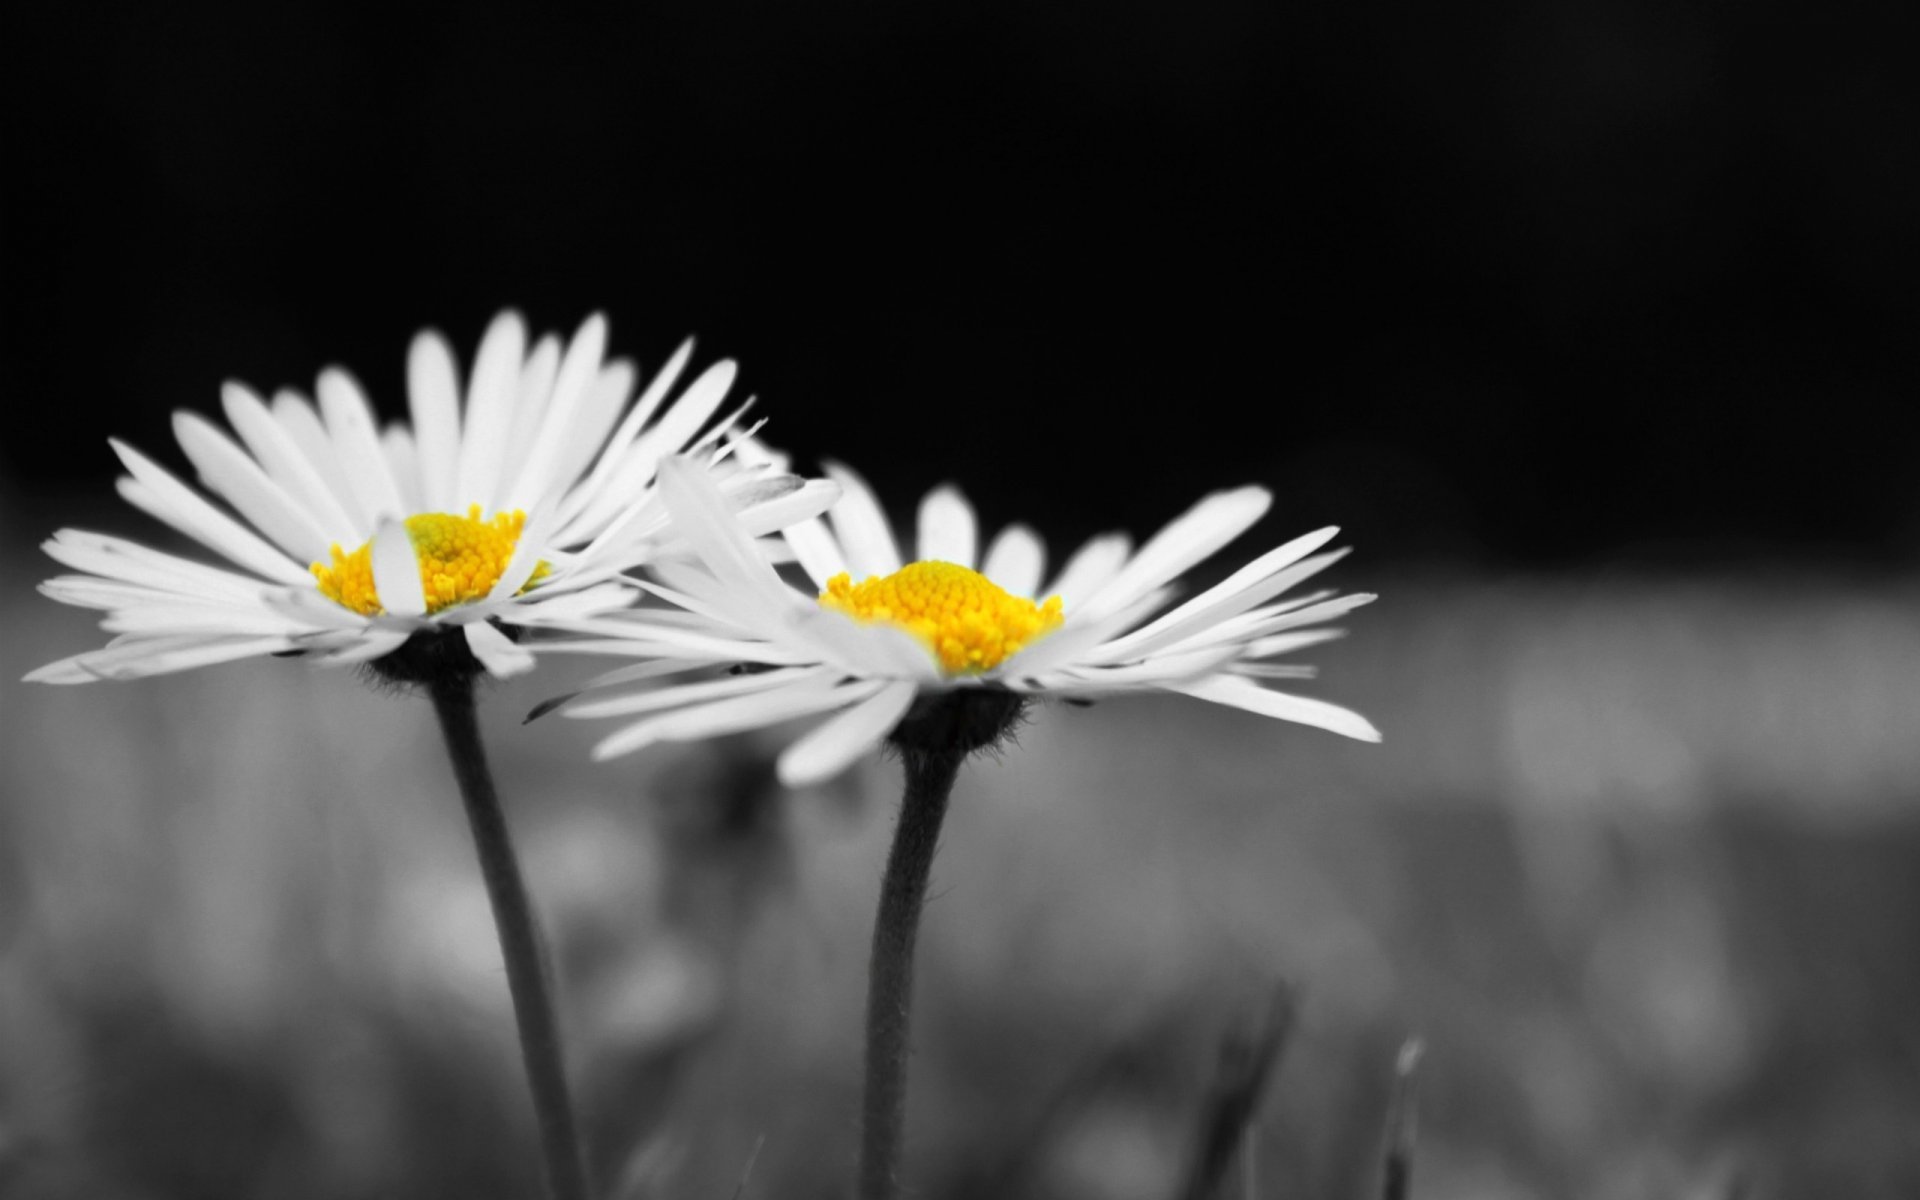 Hình ảnh hoa cúc trắng nền đen cực đẹp